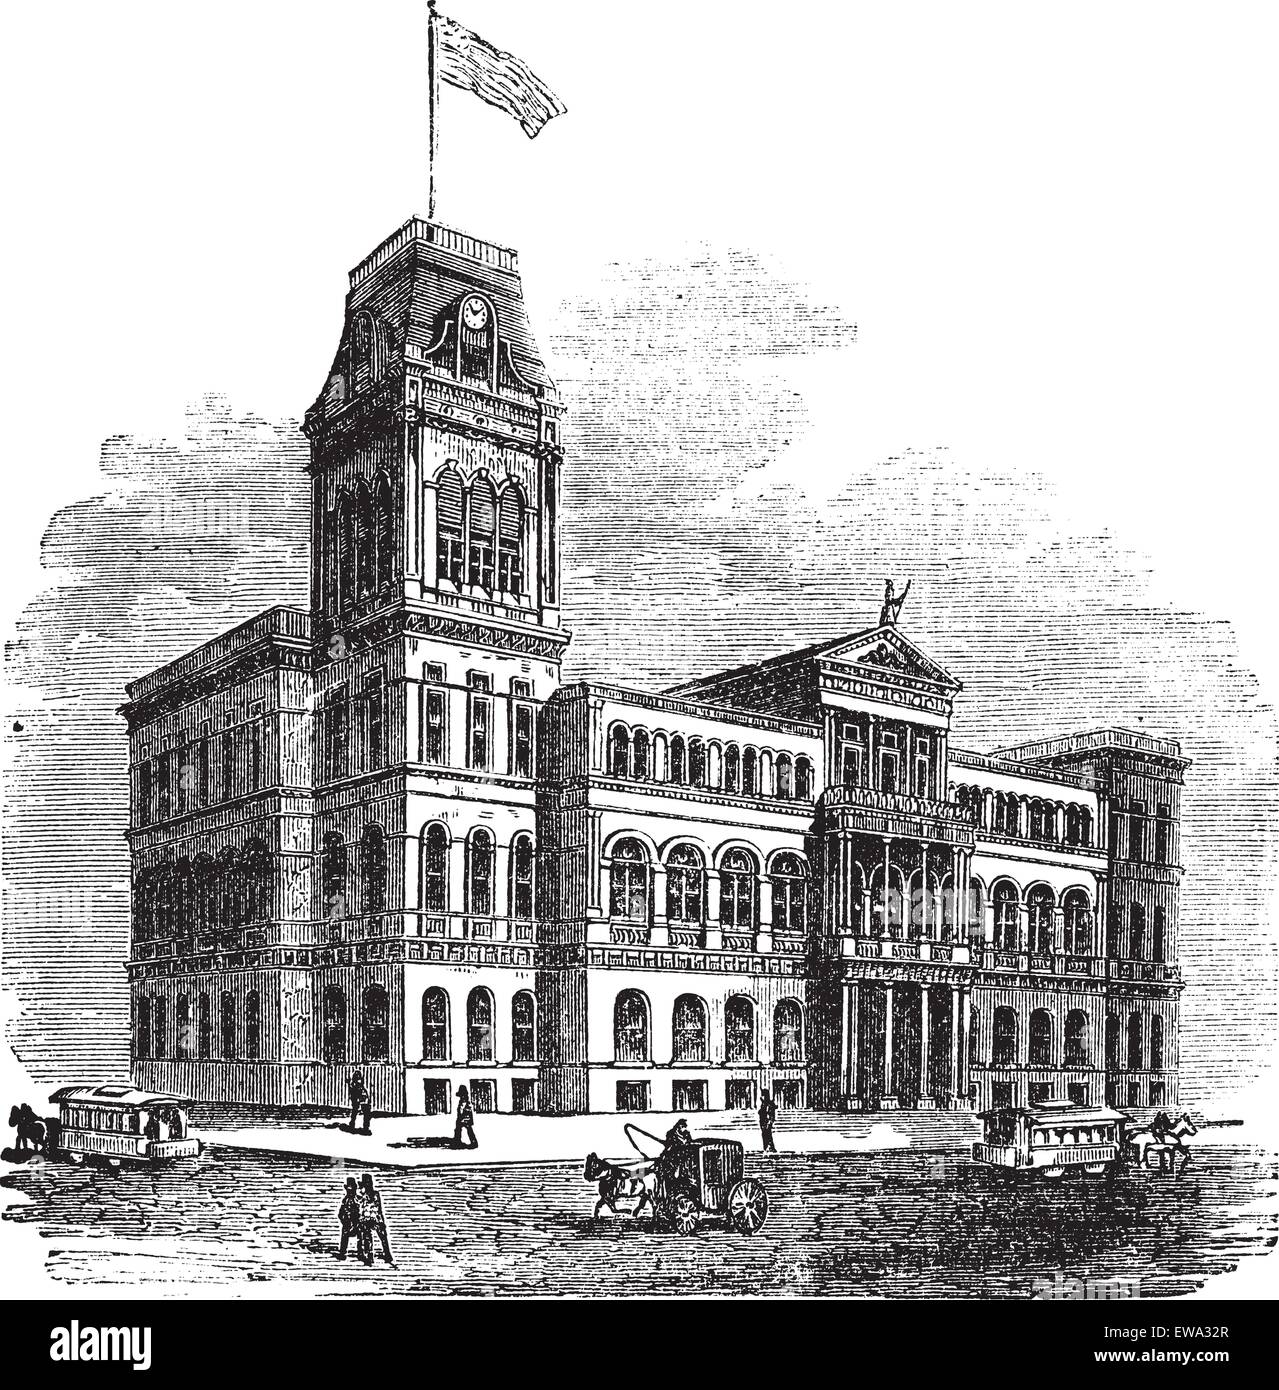 Louisville City Hall di Louisville, Kentucky, Stati Uniti, durante il 1890s, vintage incisione. Vecchie illustrazioni incise di Louisville Municipio con la gente e spostando il carrello nella parte anteriore. Illustrazione Vettoriale